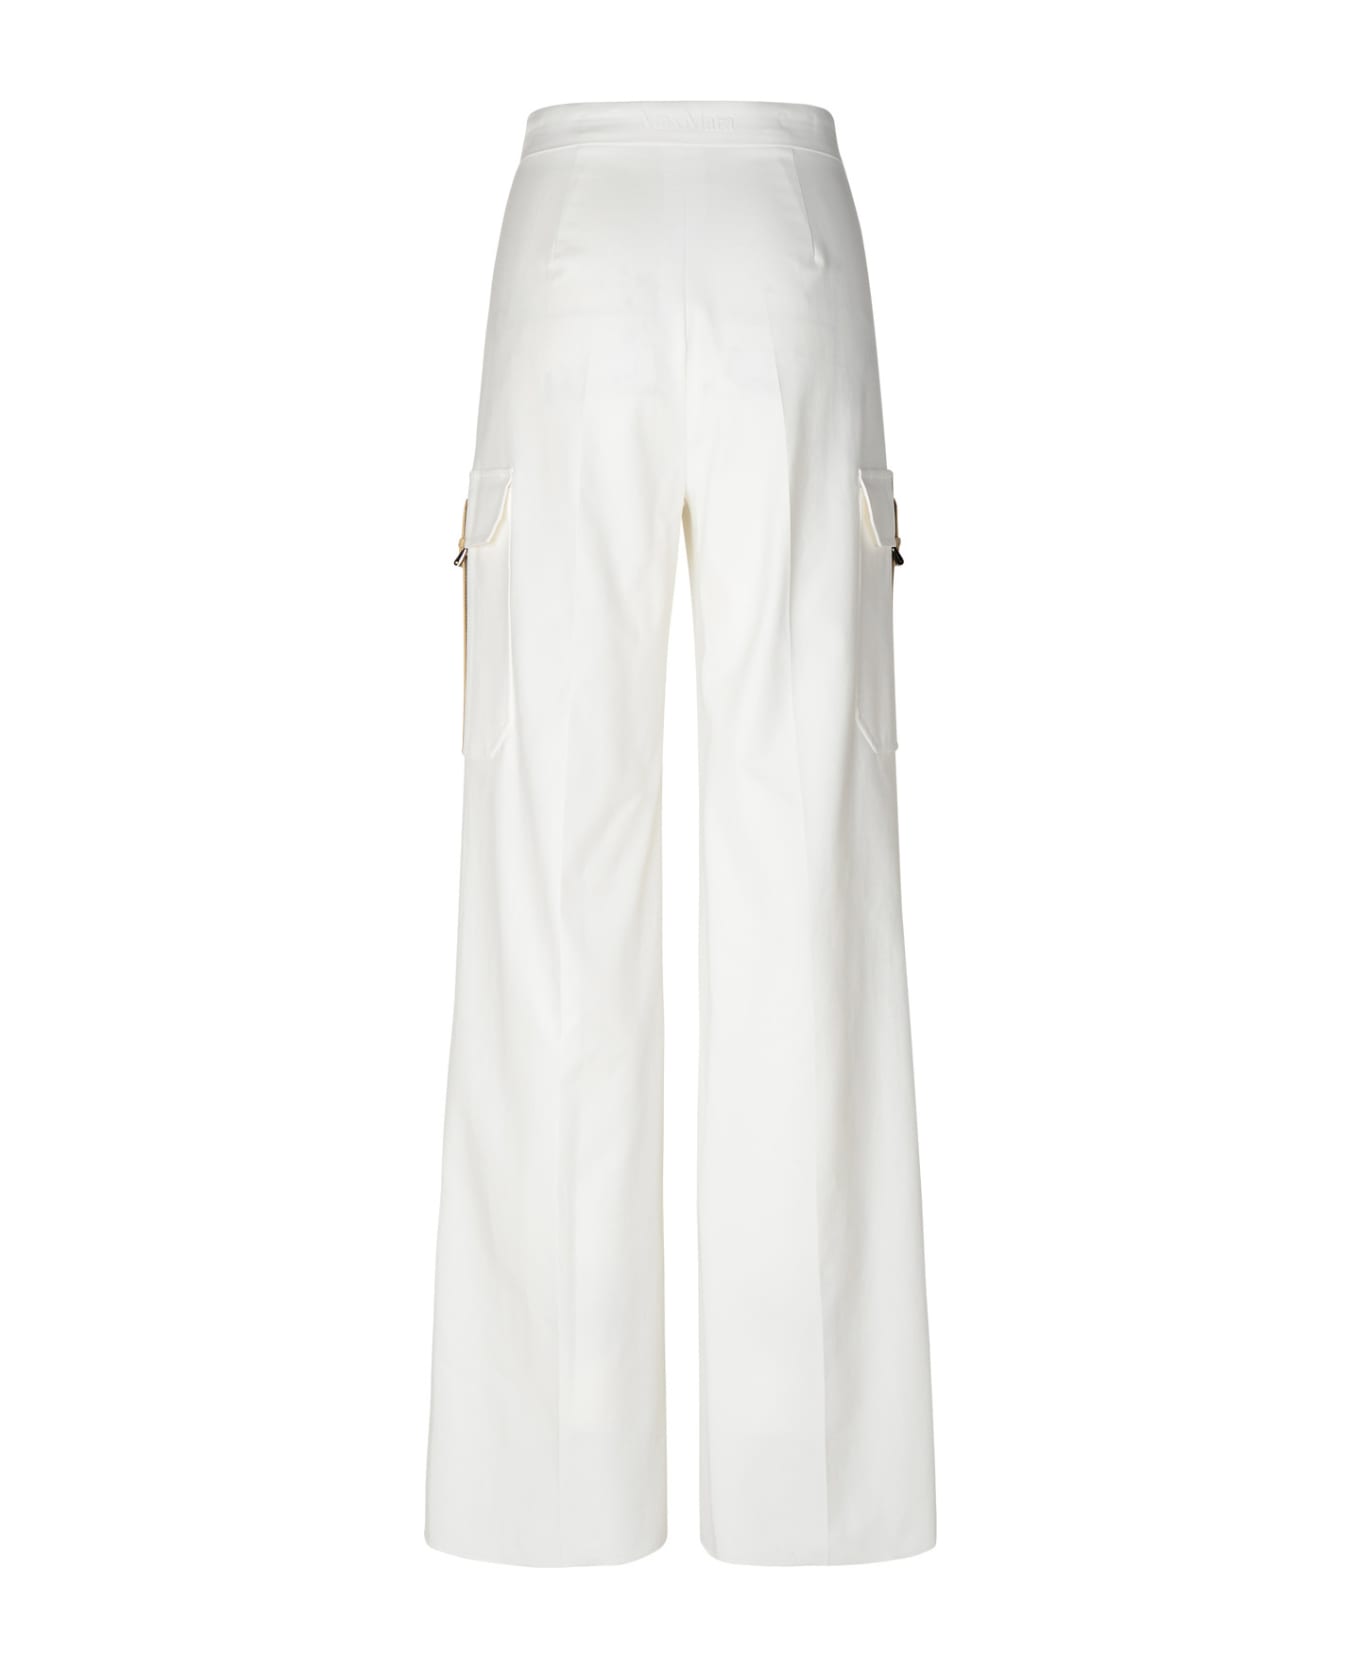 Max Mara 'edda' White Cotton Blend Cargo Pants - White